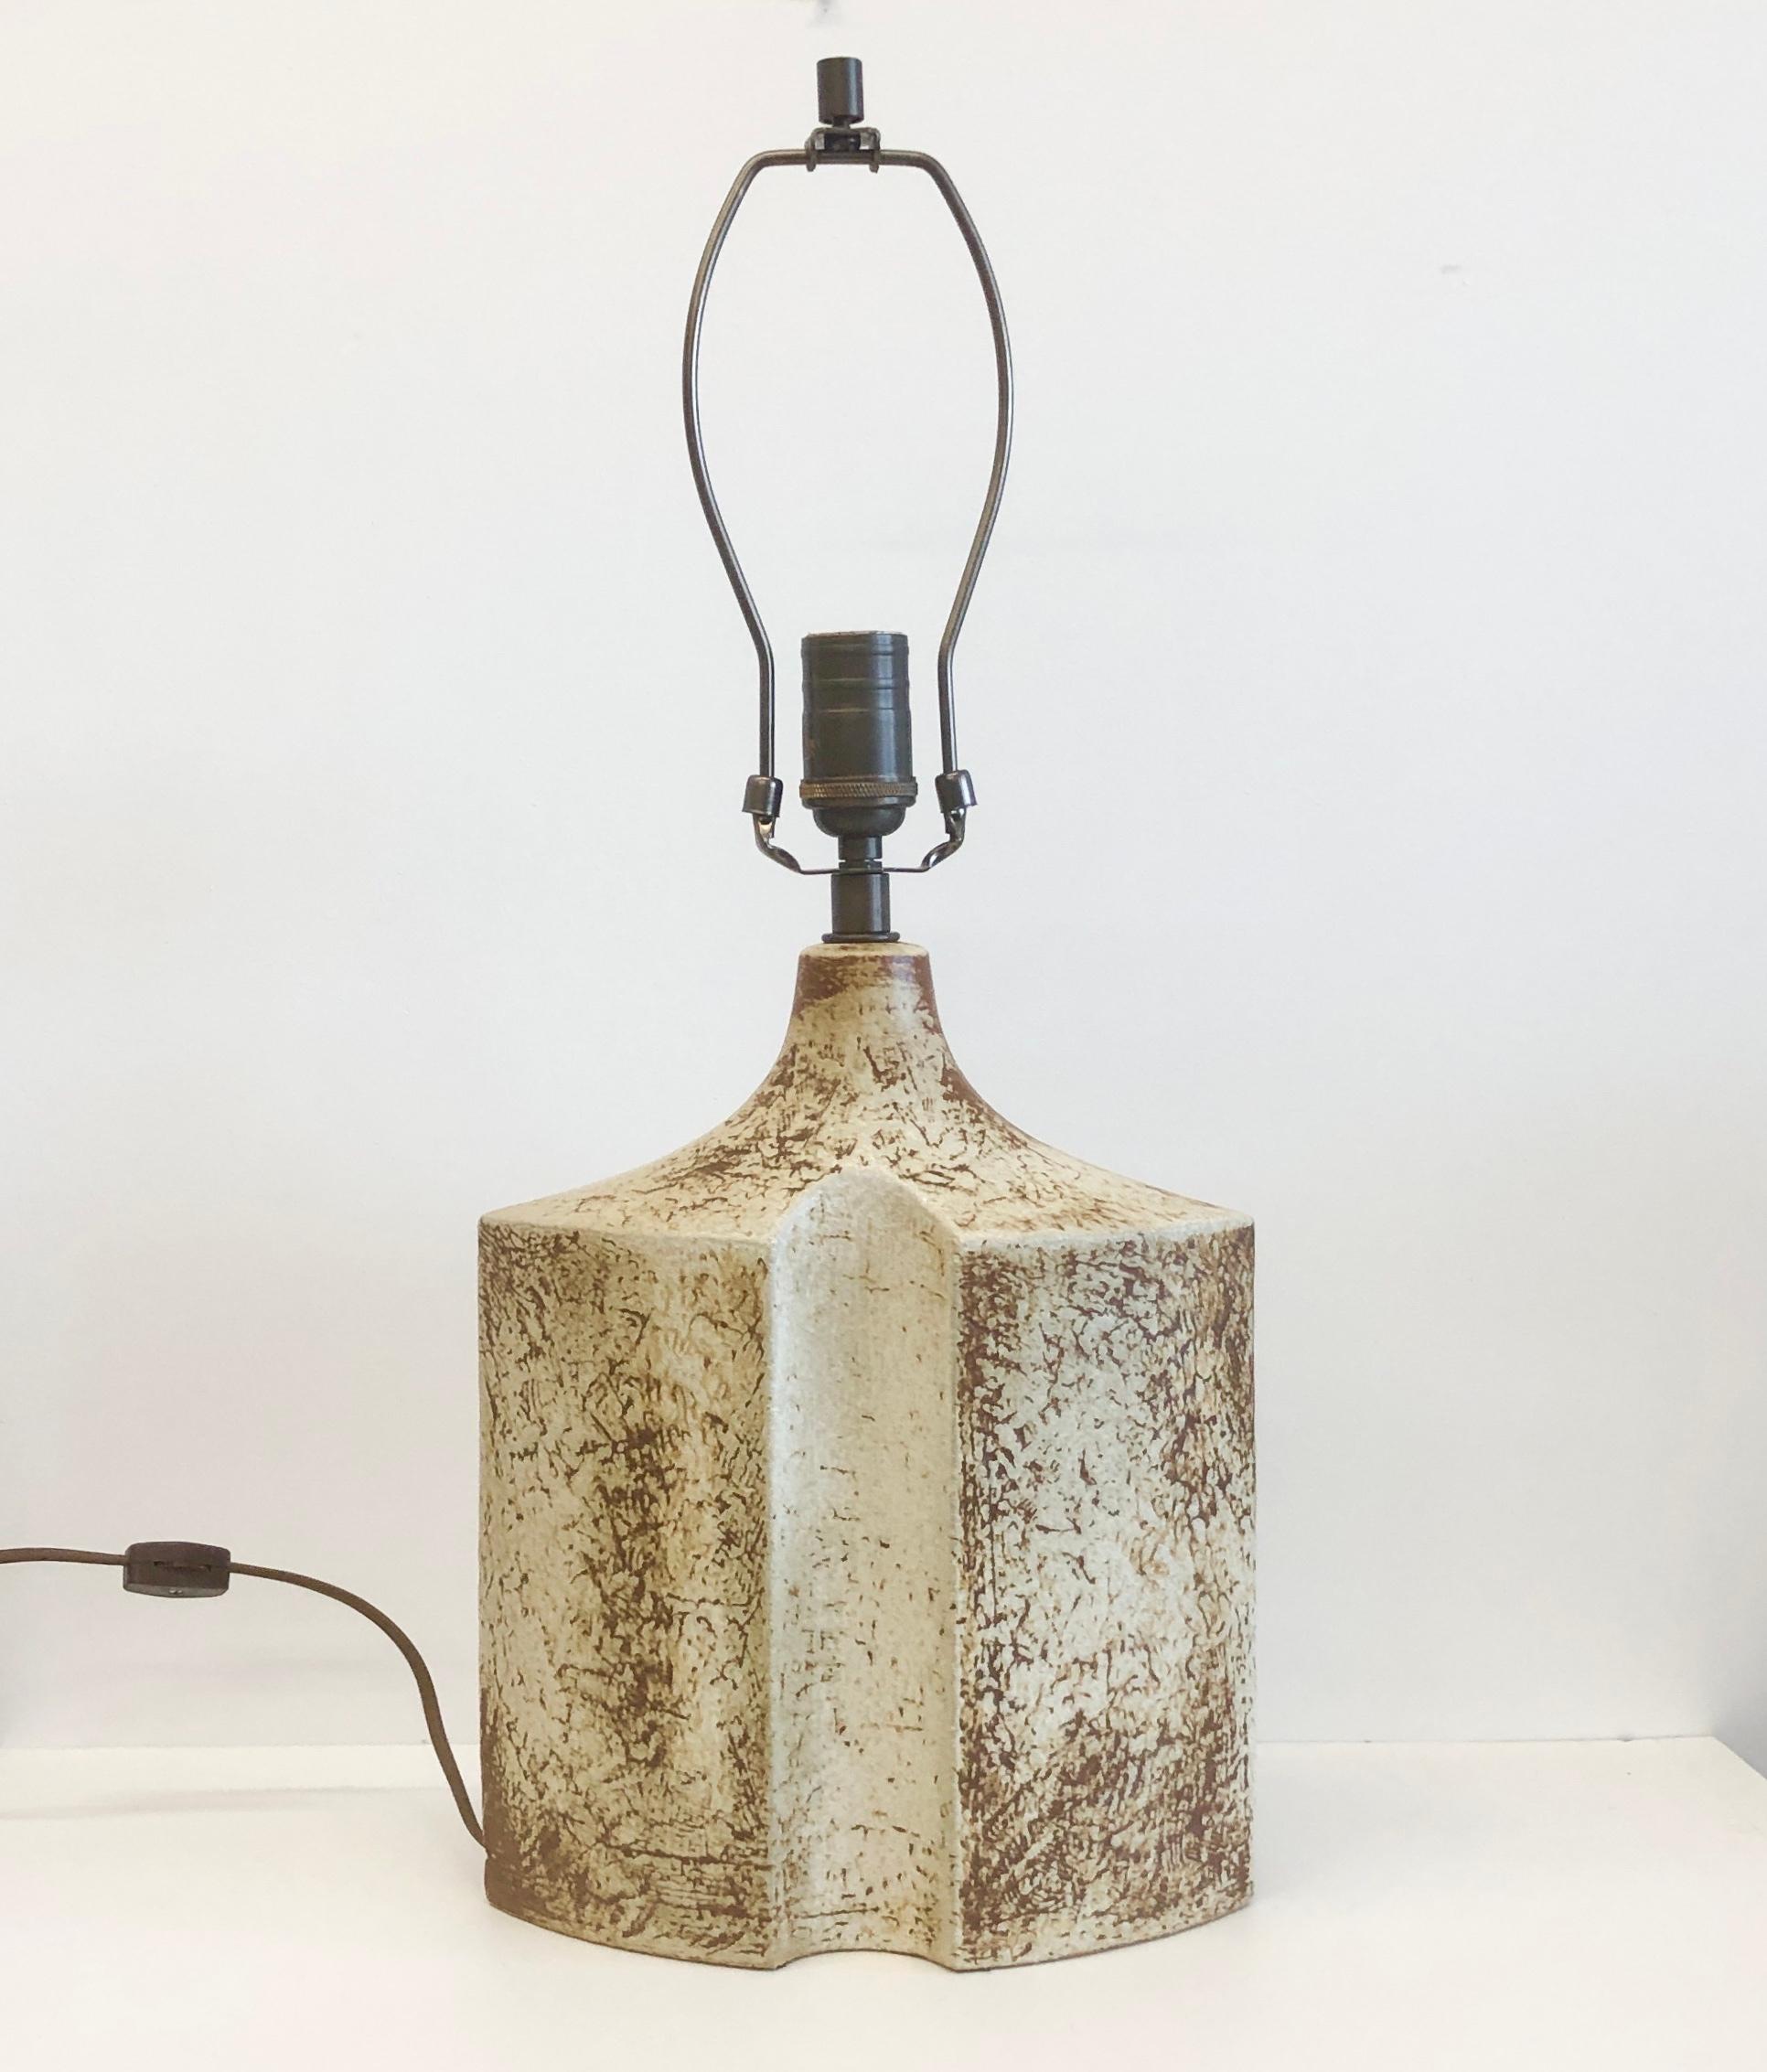  Lampe de table en grès conçue par Haico Nitzsche pour Søholm Pottery, Bornholm, Danemark. Circa 1970th. Nouvellement recâblé.
Dimensions : hauteur de la base en céramique 12.5